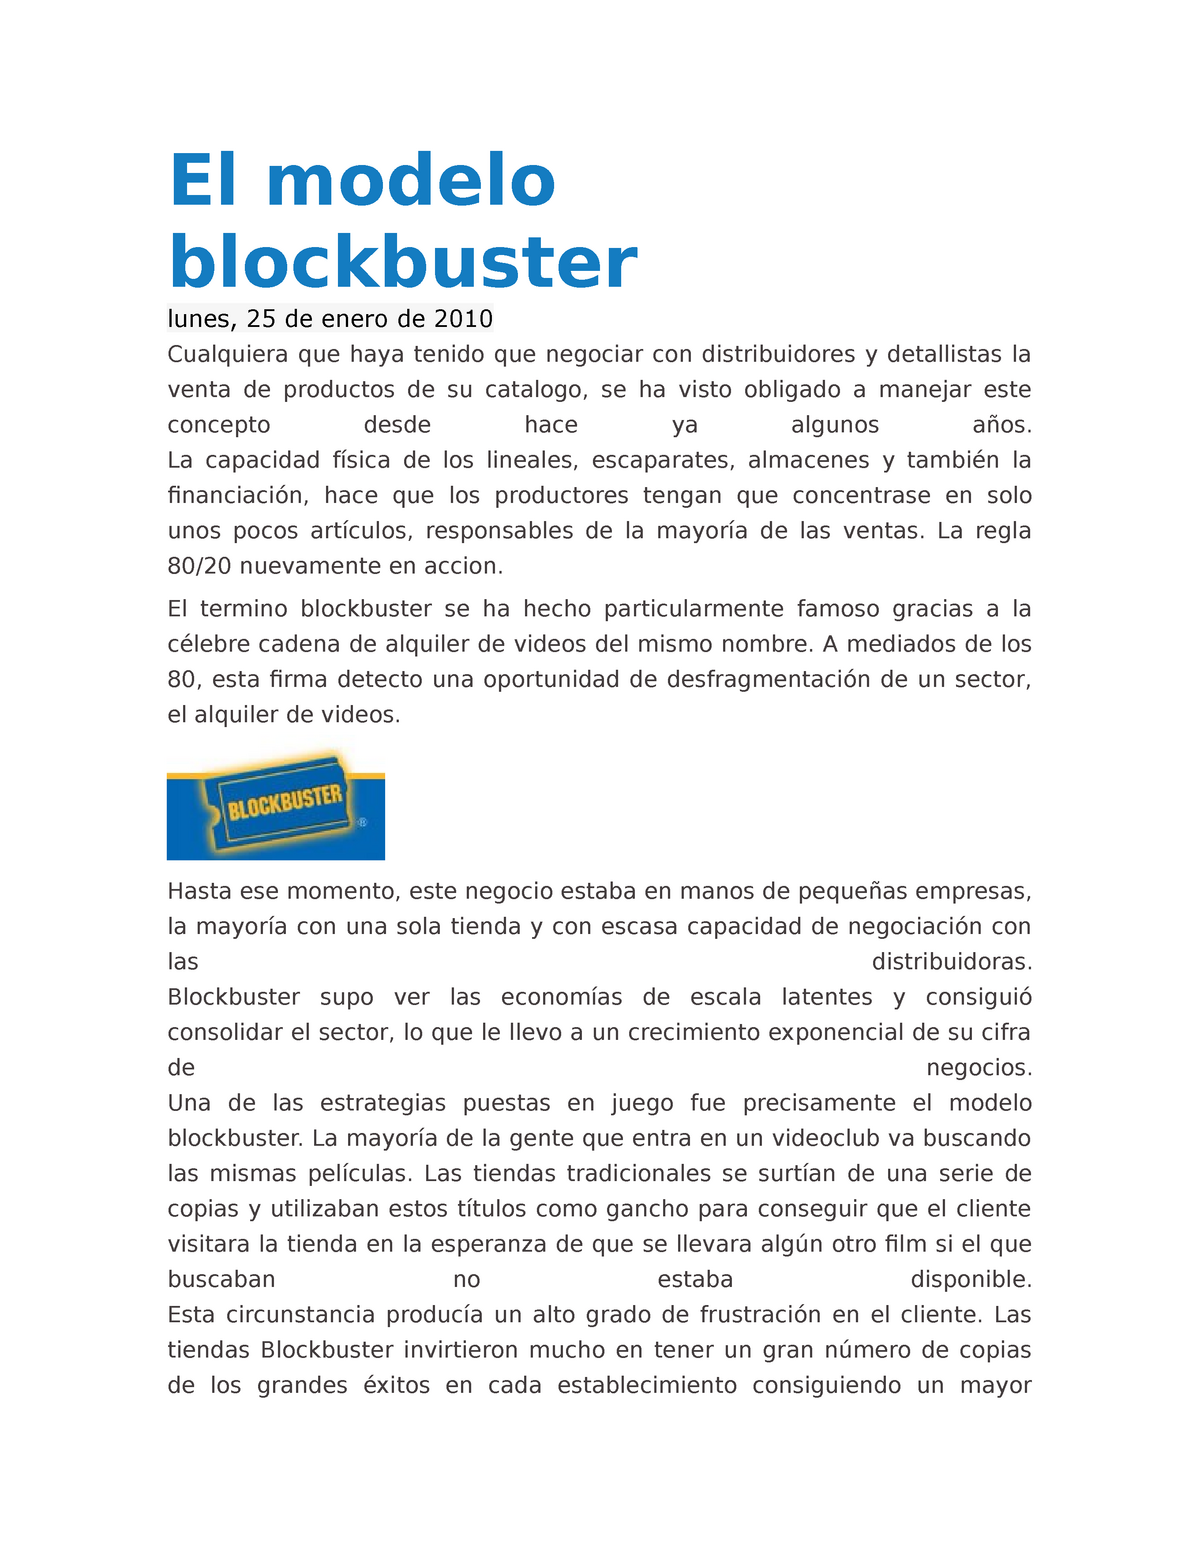 El modelo blockbuster - Apuntes 1 - El modelo blockbuster lunes, 25 de  enero de 2010 Cualquiera que - Studocu